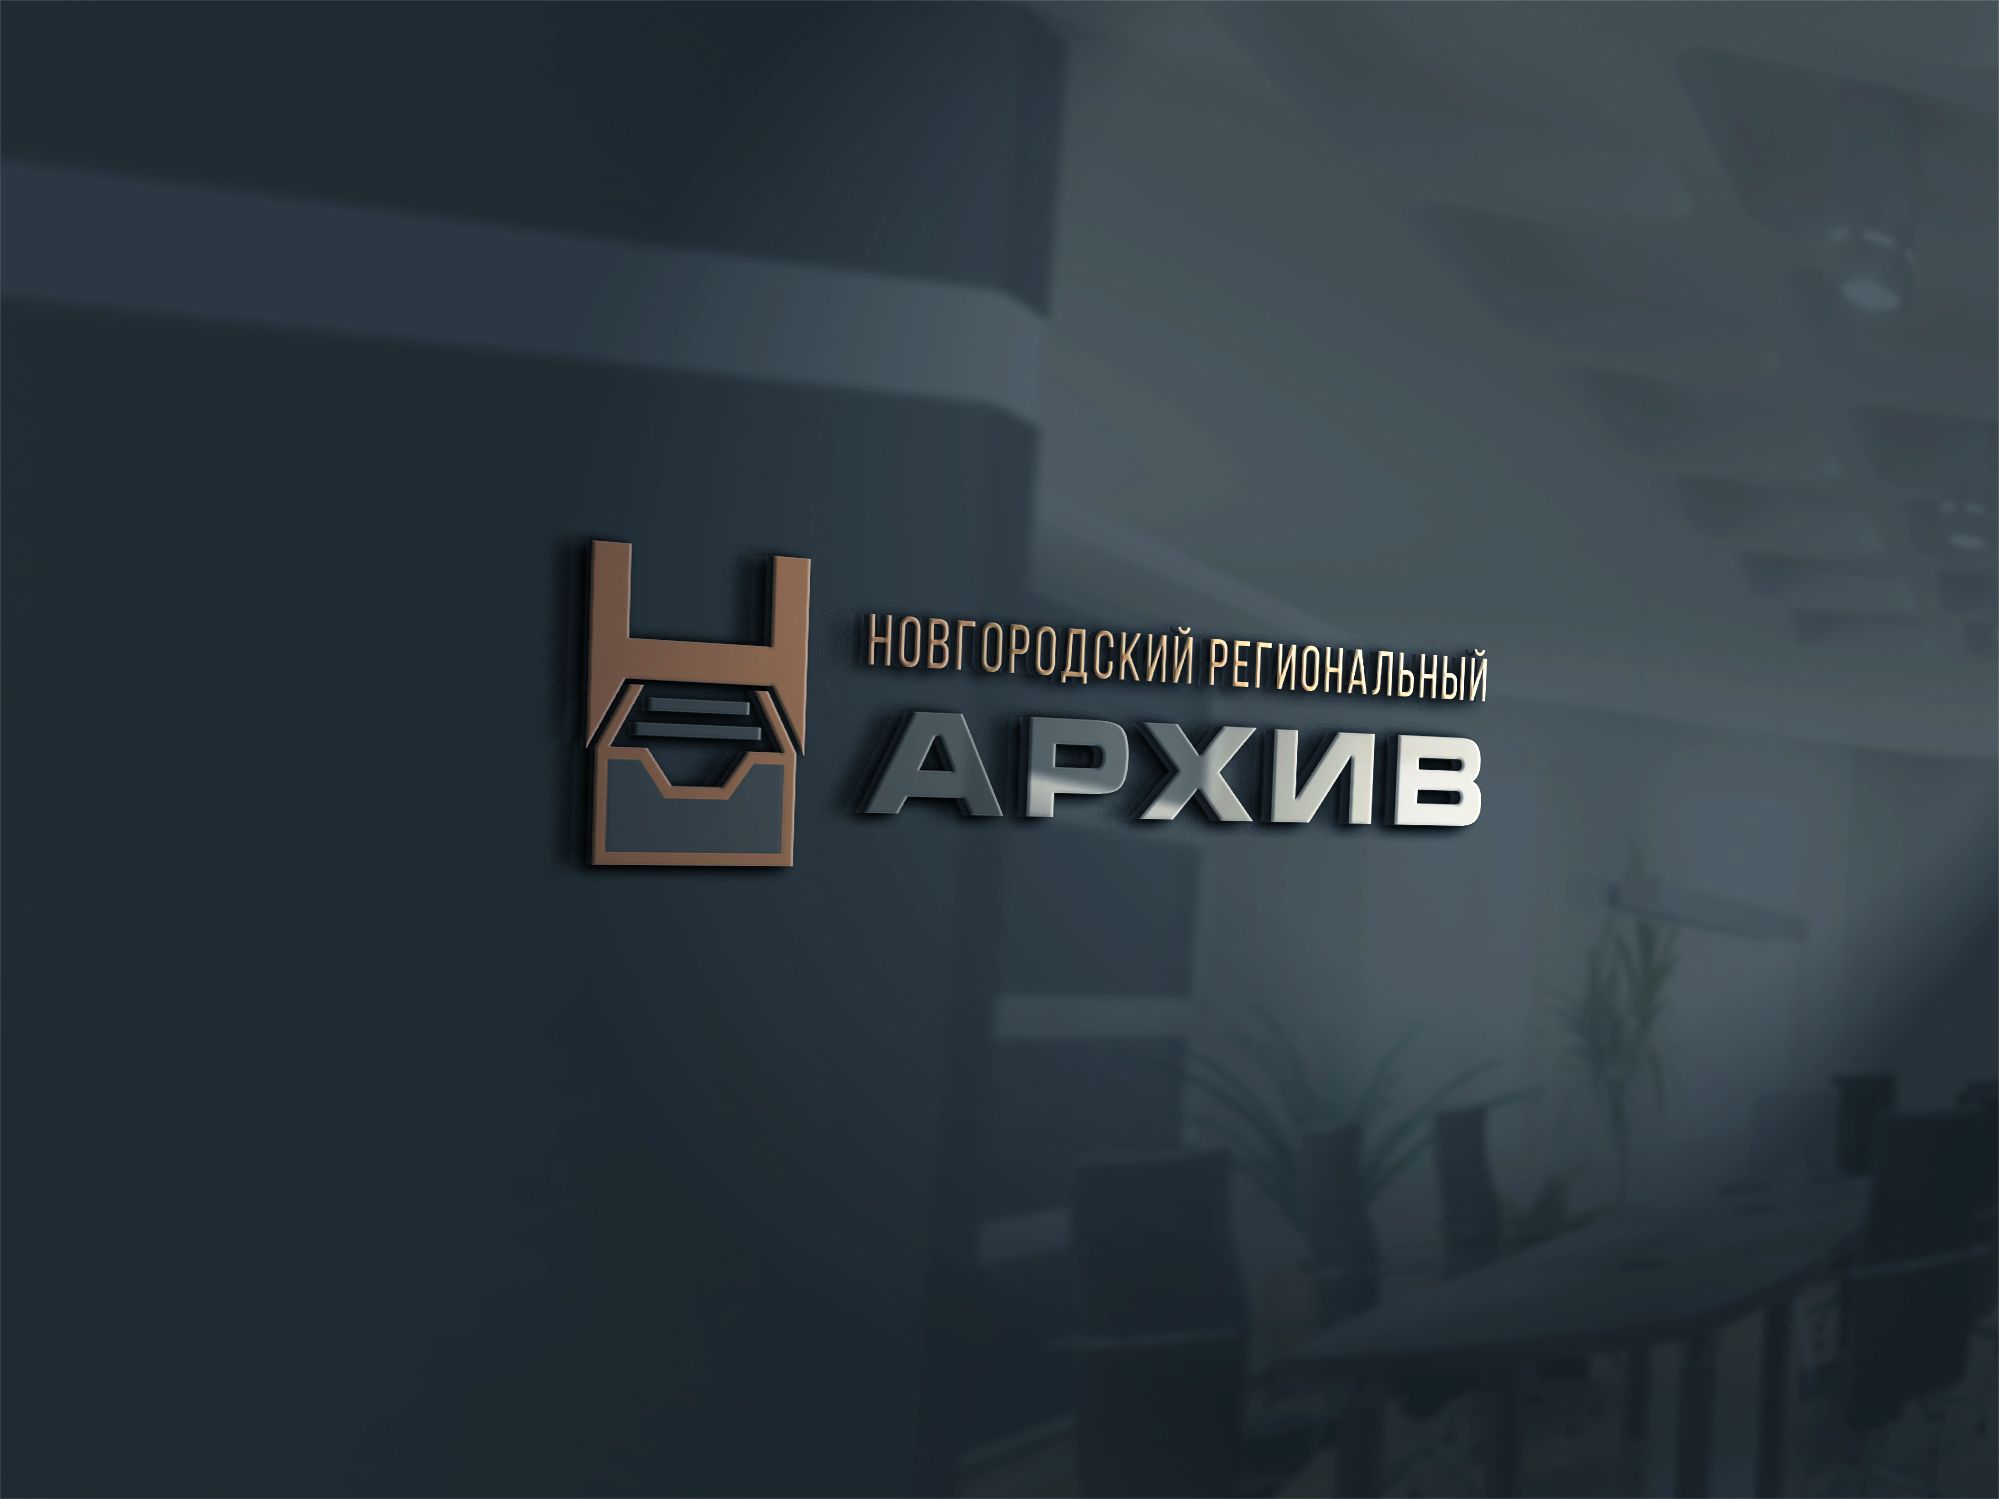 Логотип и фирменный стиль архива - дизайнер U4po4mak